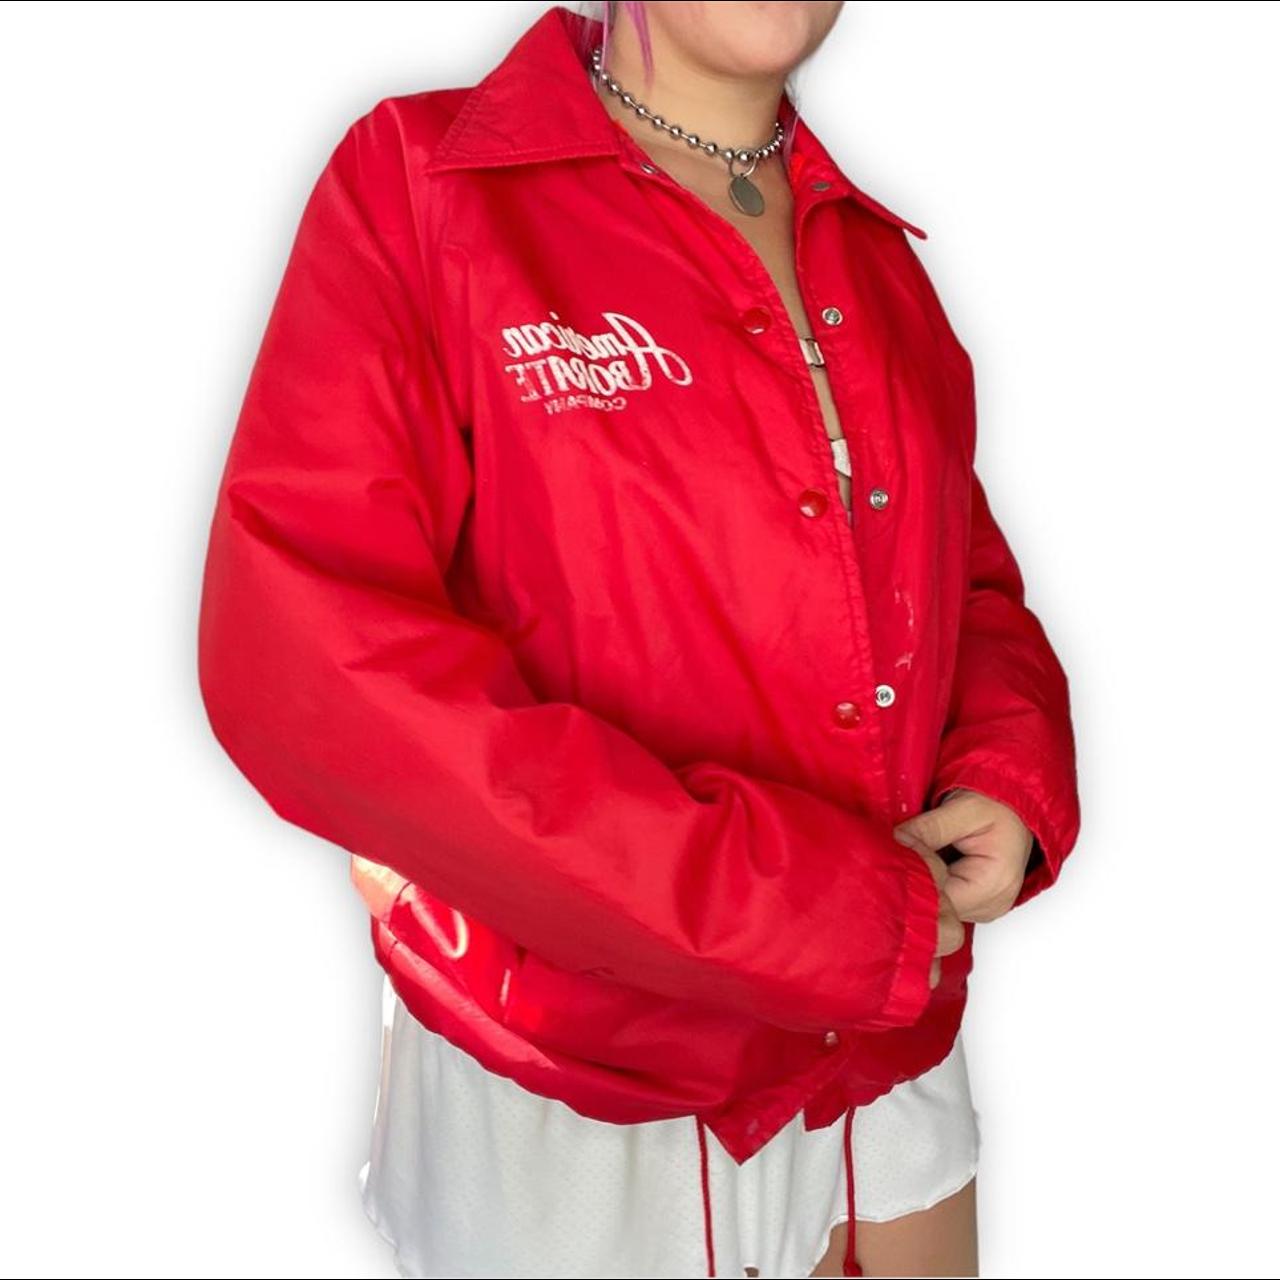 90’s Lined Jacket 🥫 By: Sportsmaster Vintage red... - Depop